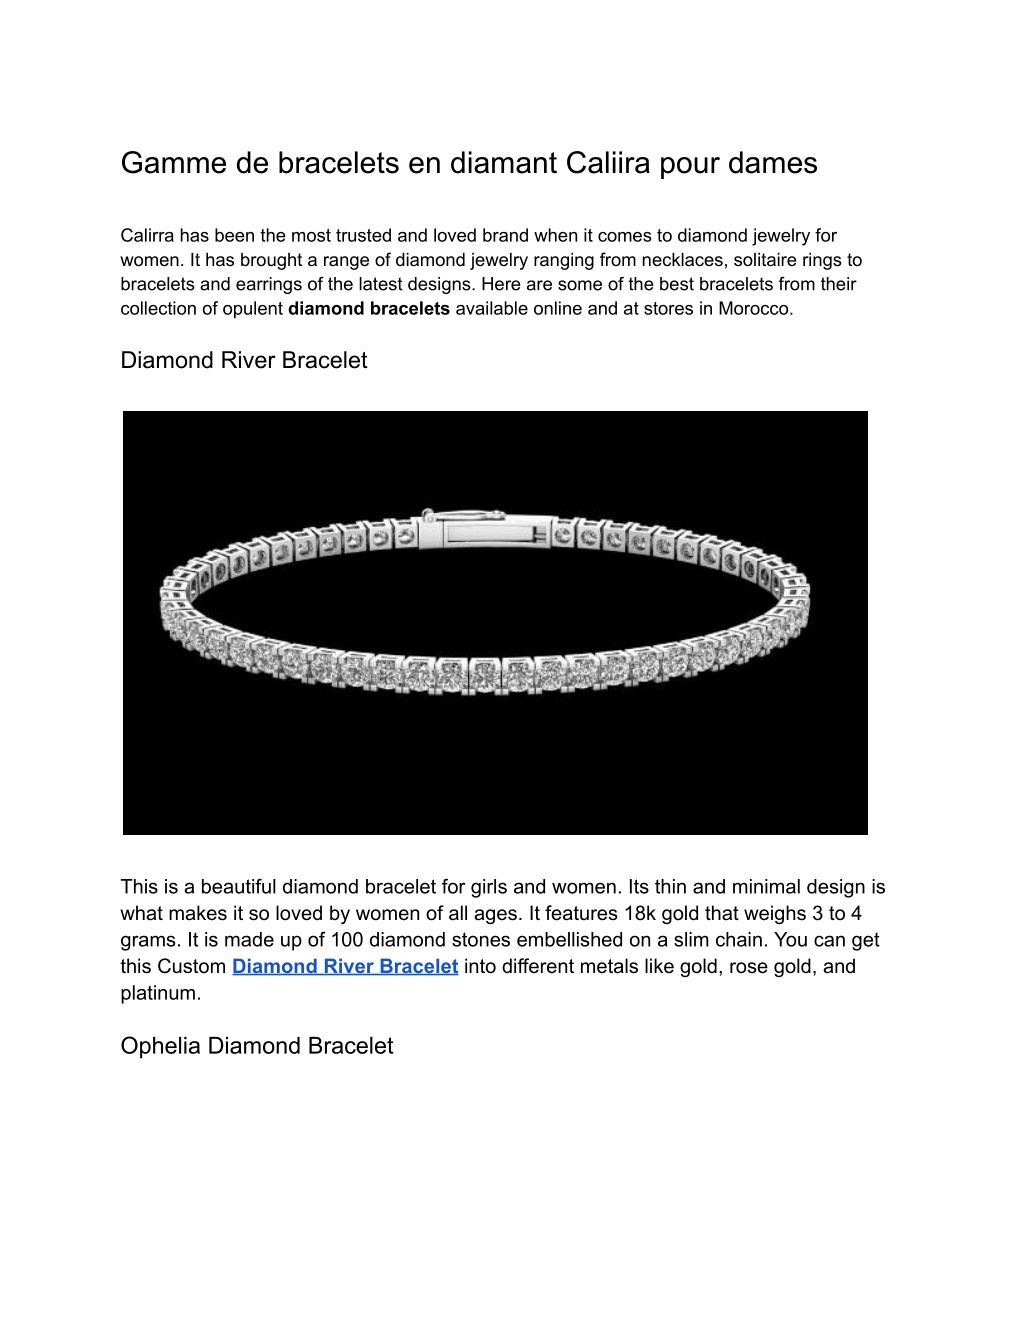 PPT - Gamme de bracelets en diamant Caliira pour dames PowerPoint ...